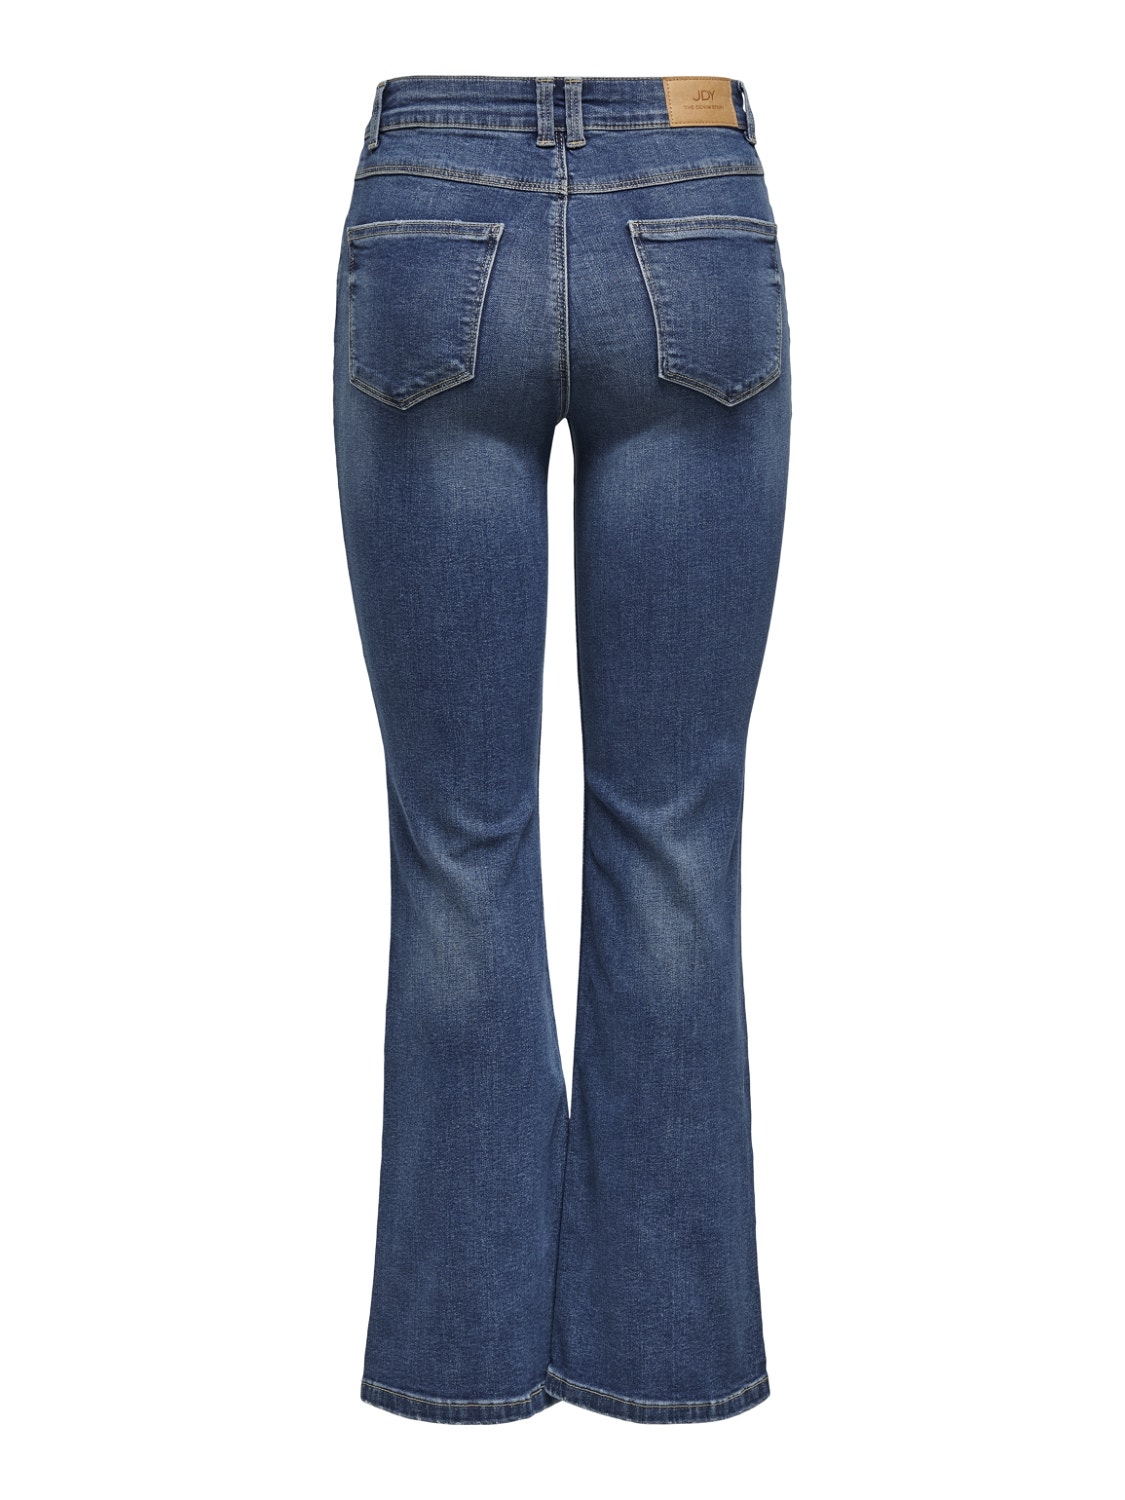 ONLY JDYNewFlora High Flared Jeans -Medium Blue Denim - 15221571